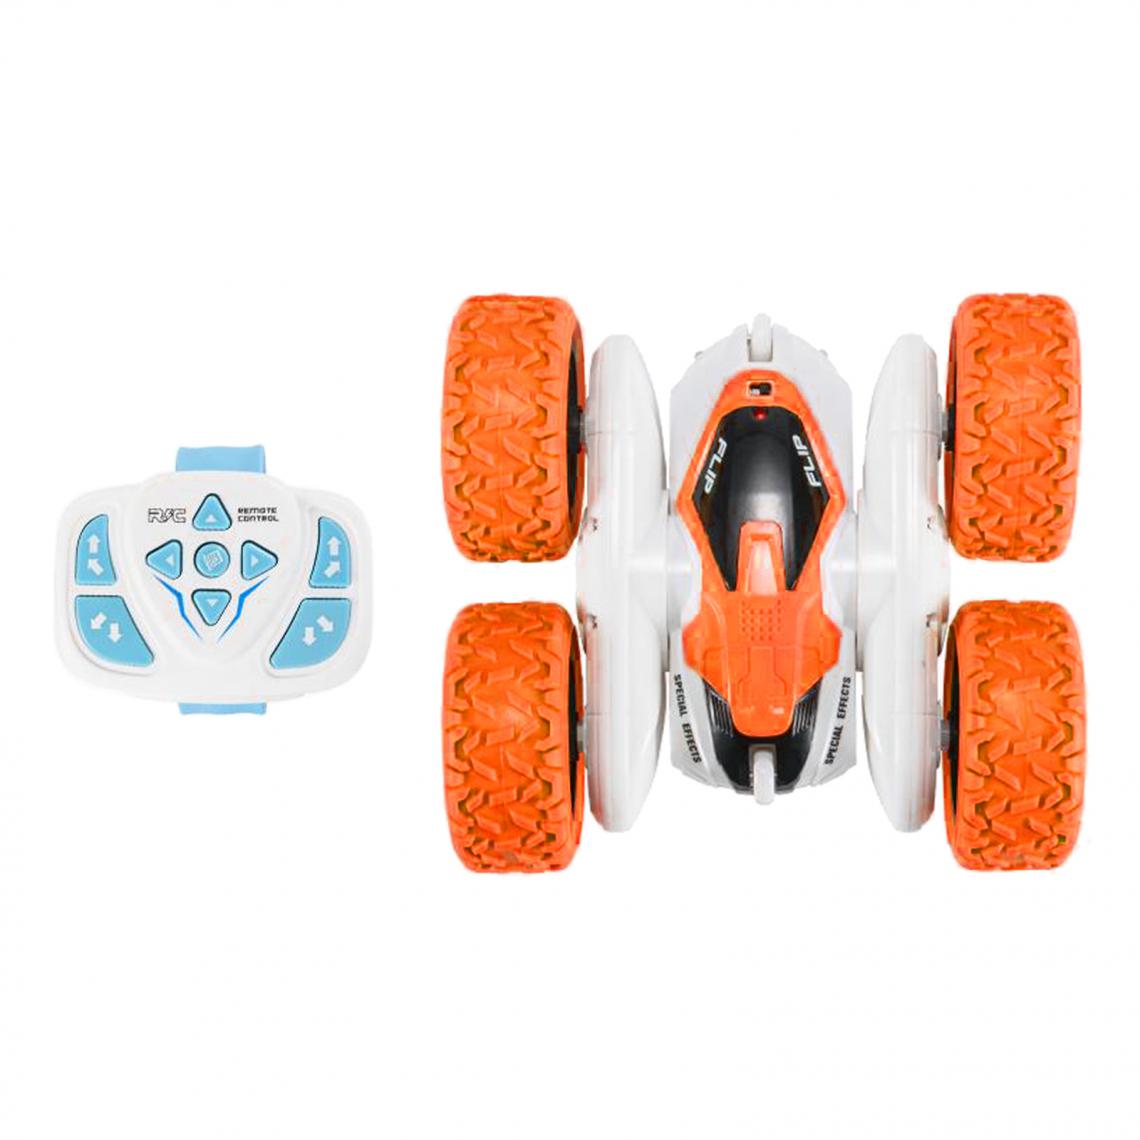 marque generique - Électrique Remte Control RC Voiture D'escalade Fast Drift Racing Stunt Car Orange - Accessoires maquettes